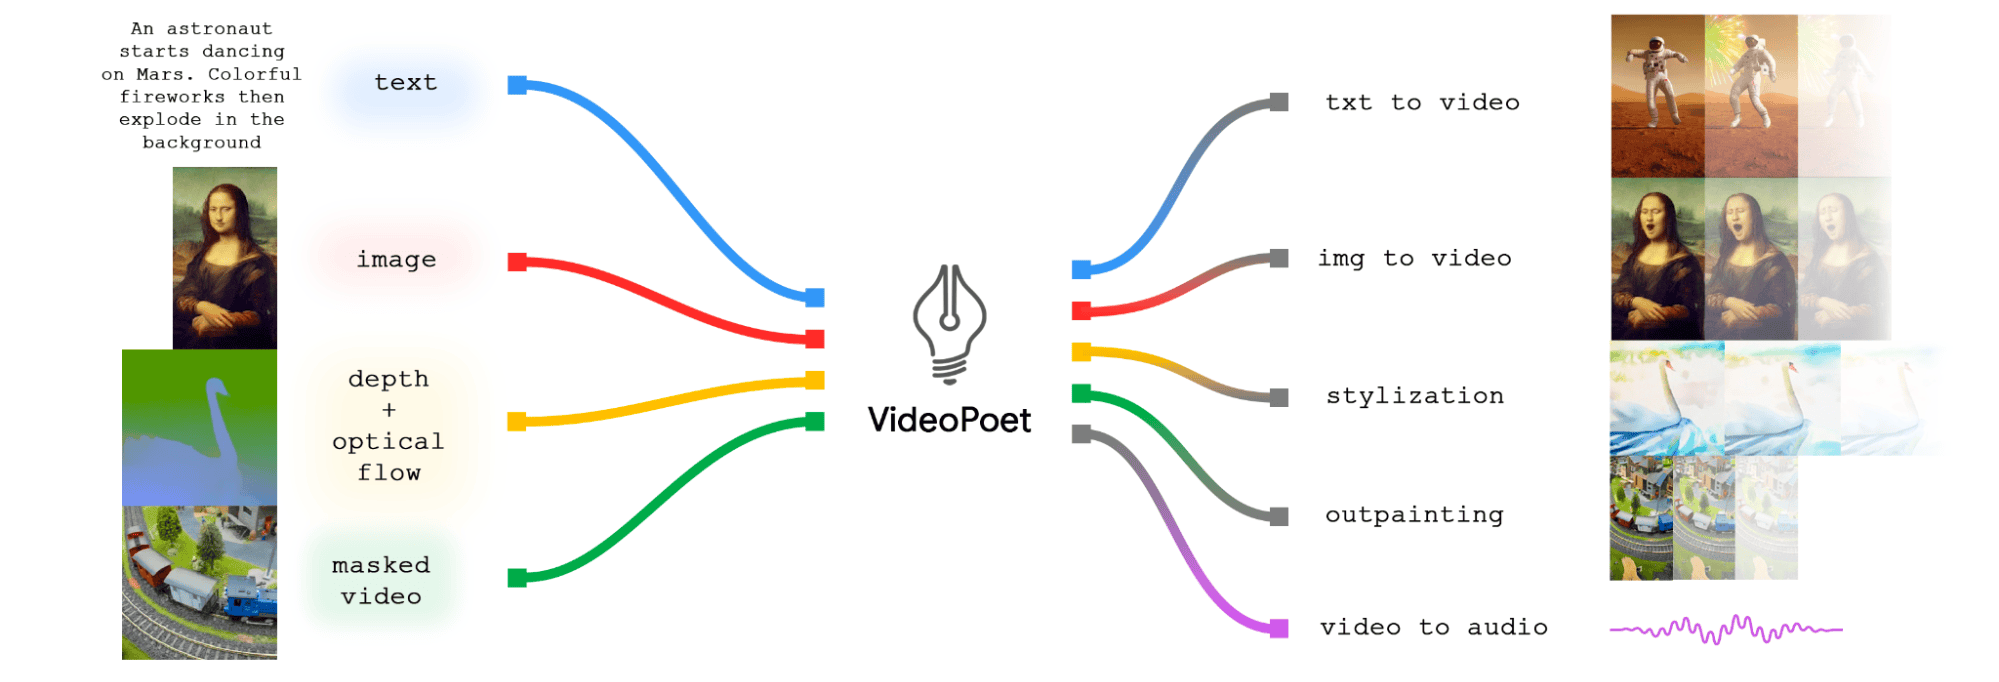 可生成无限长视频，谷歌最新视频生成模型 VideoPoet 究竟有多强